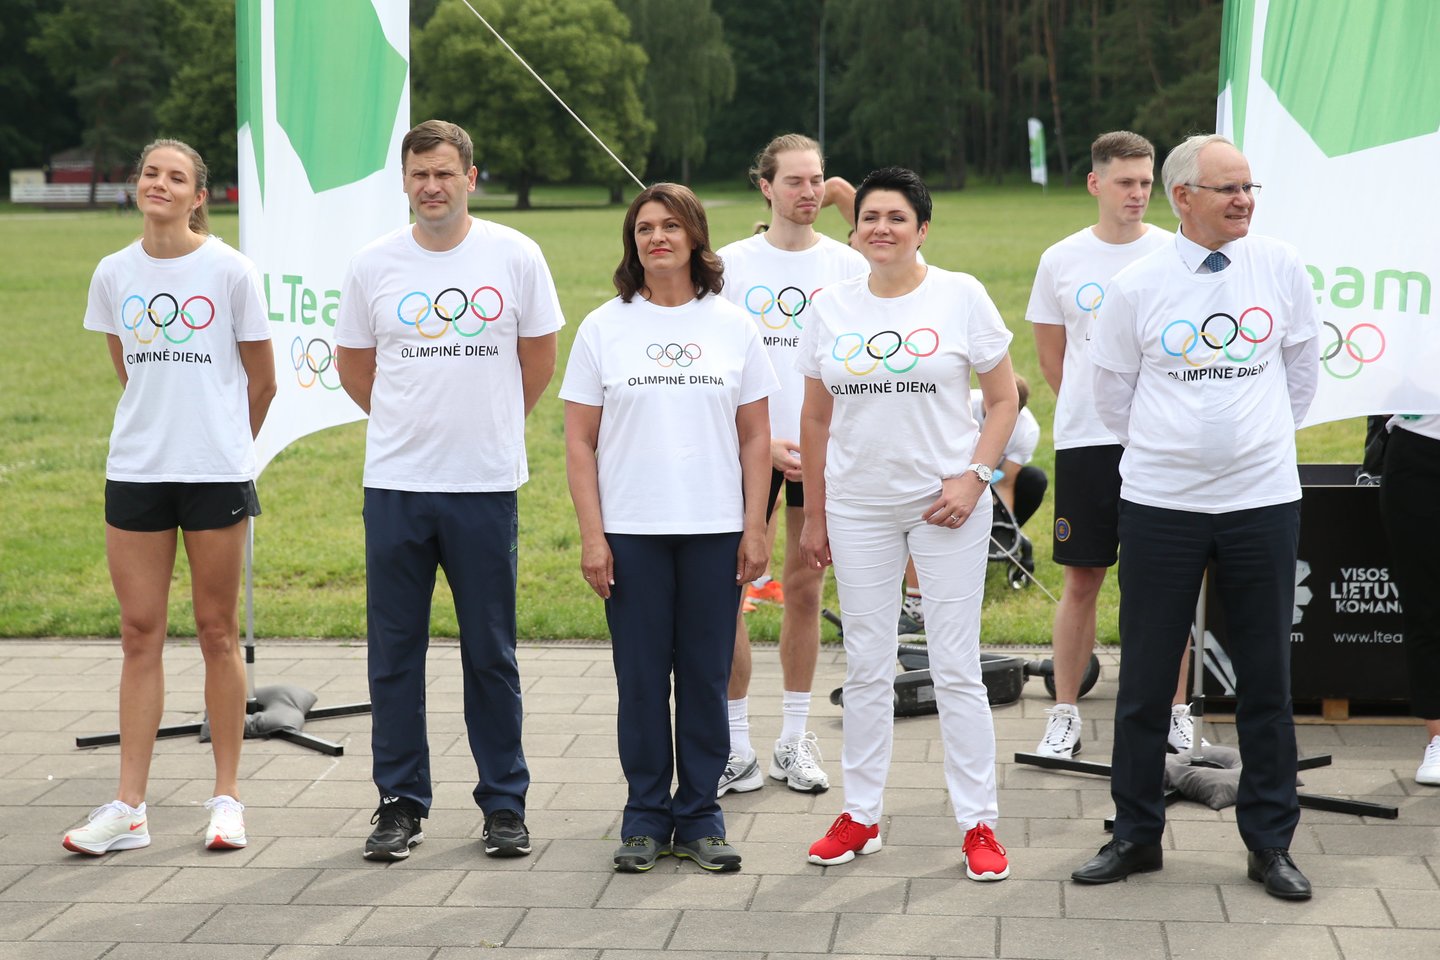  Olimpinės dienos renginys Vingio parke ir olimpinės mylios bėgimas <br> R.Danisevičiaus nuotr.